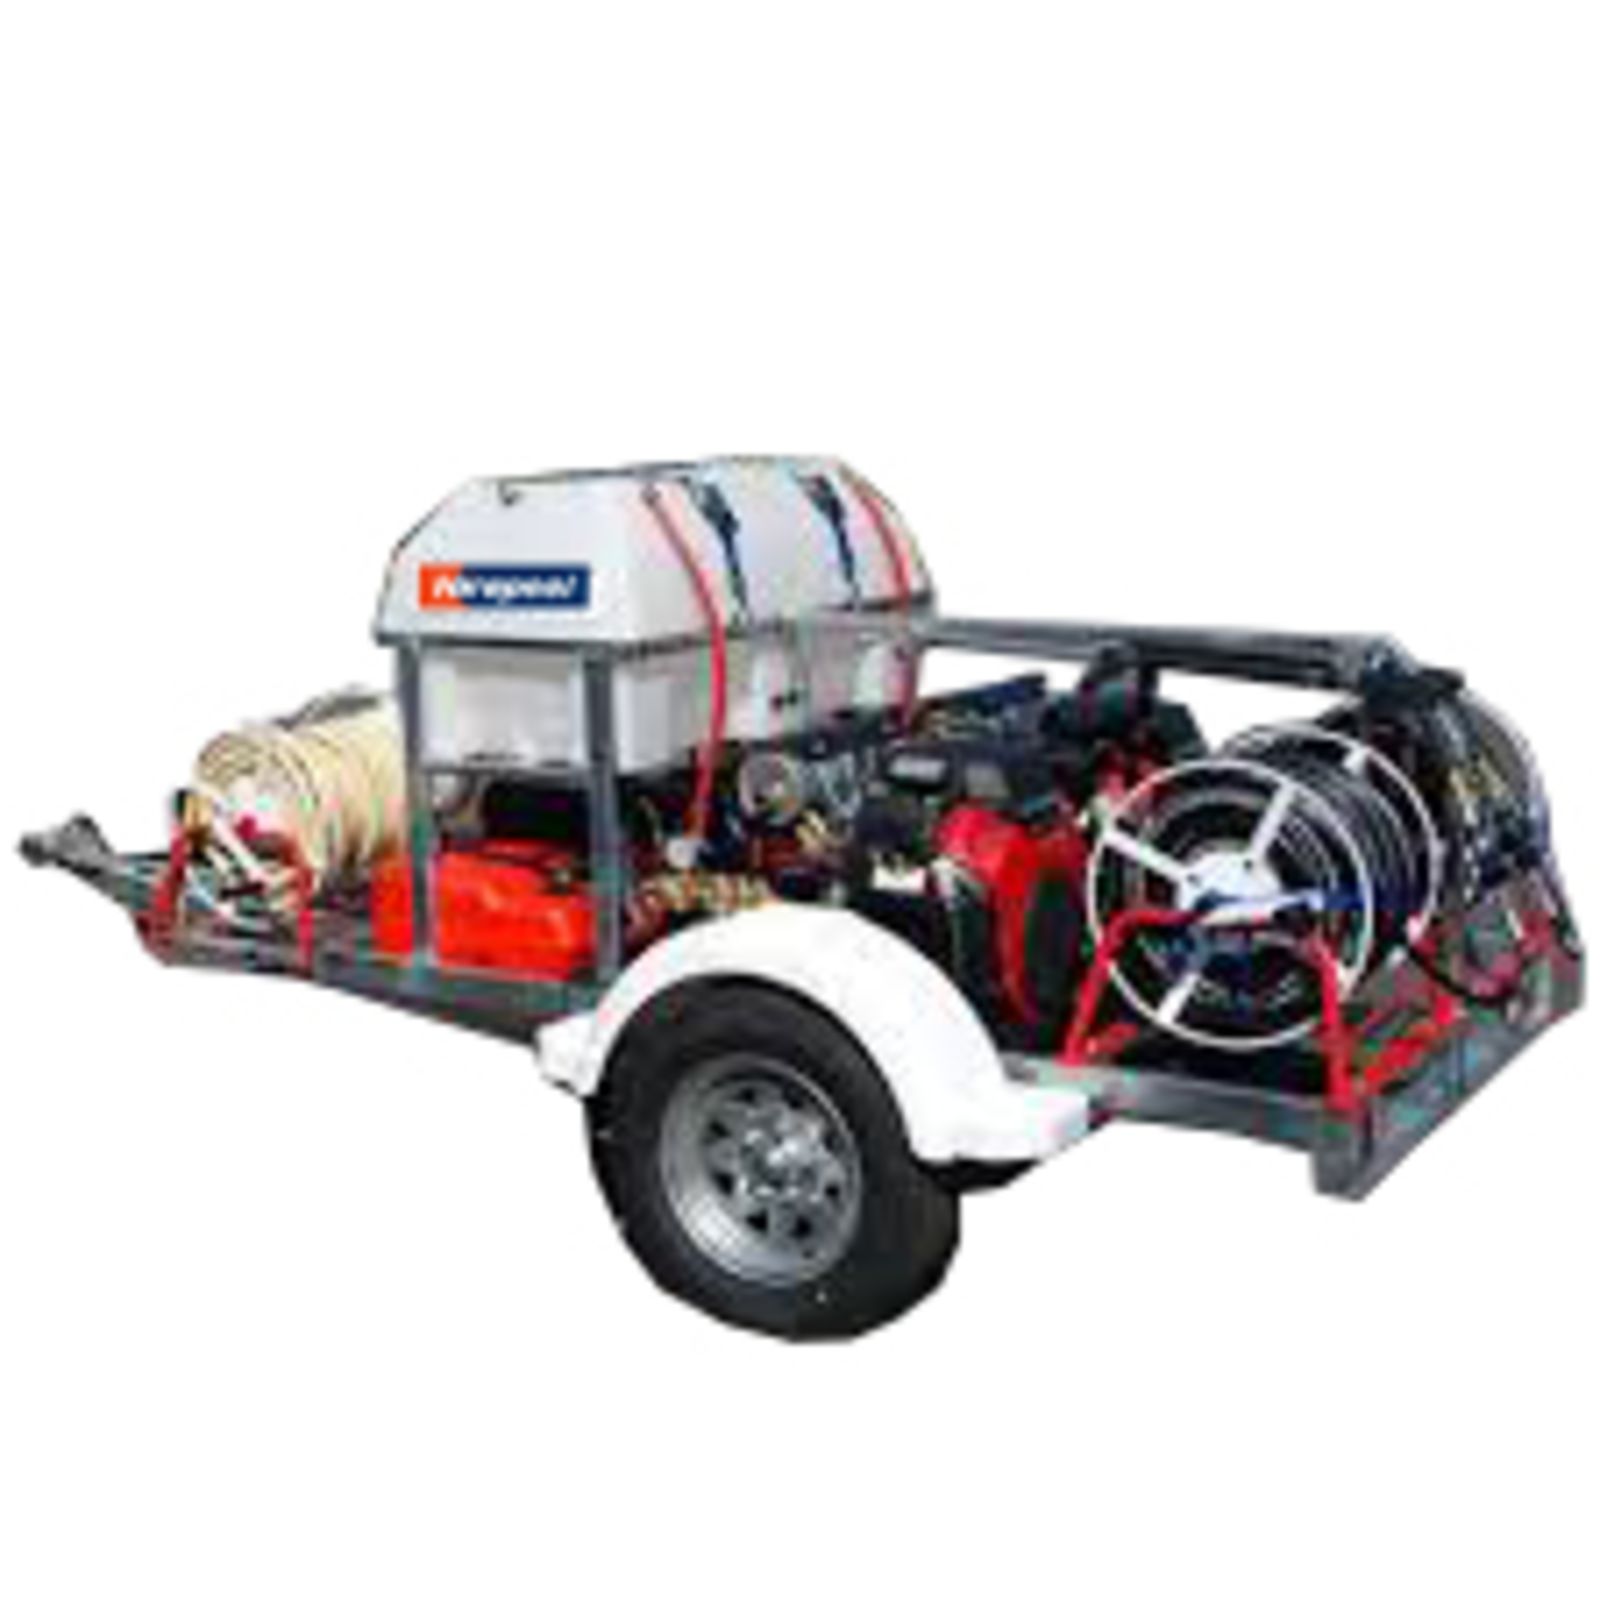 146F Water Blaster Hot Towable Diesel 3000 psi